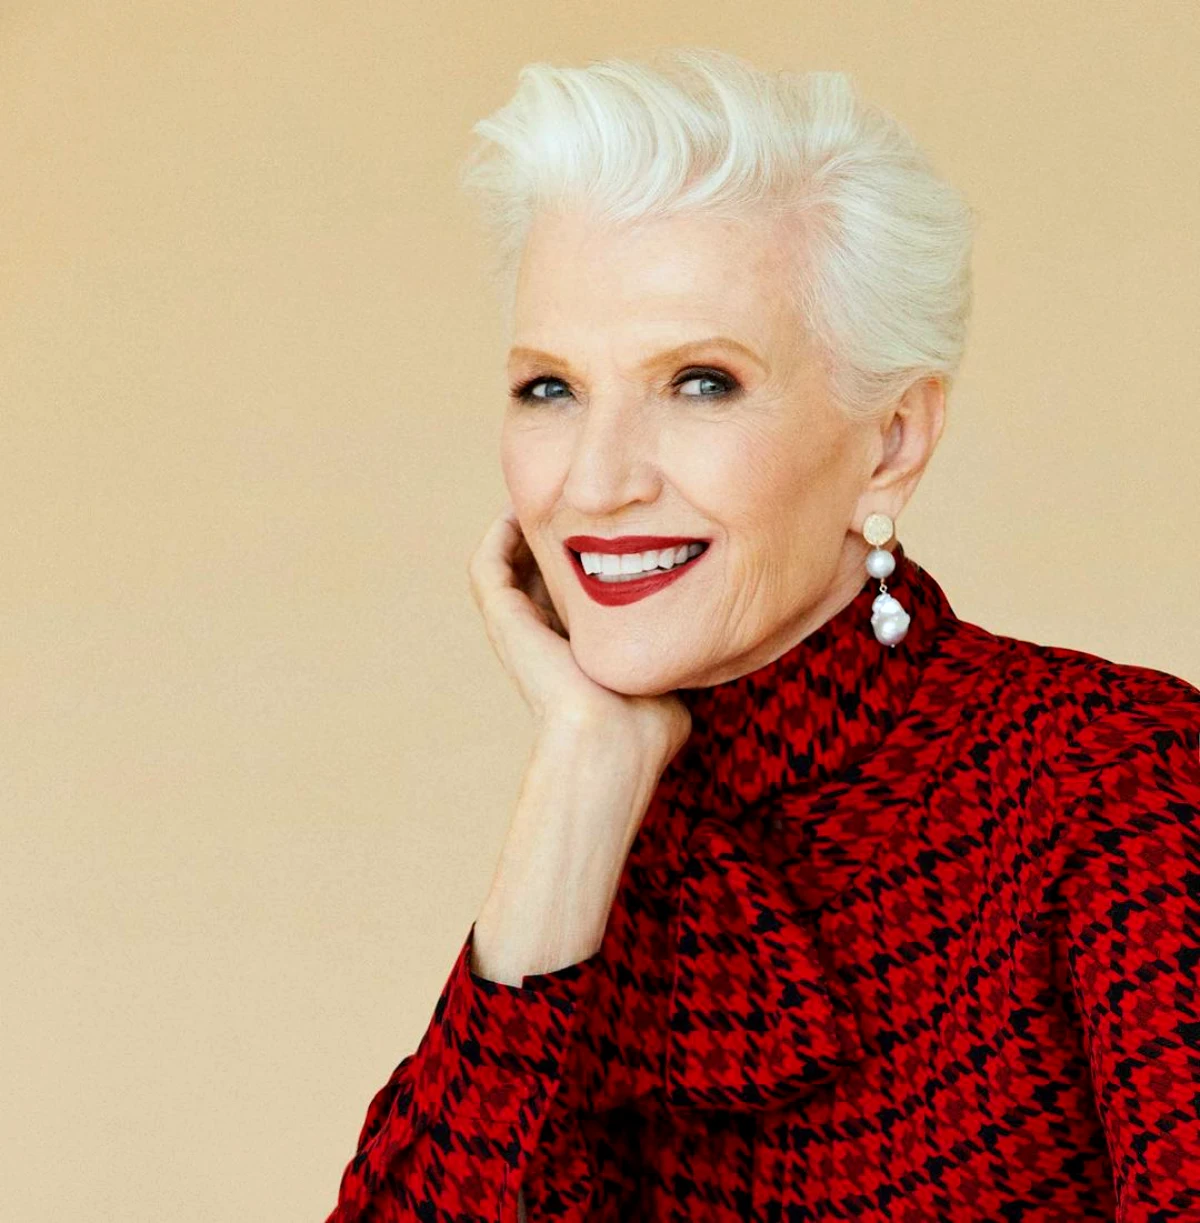 comment porter la couleur rouge apres 50 ans femme cheveux blancs